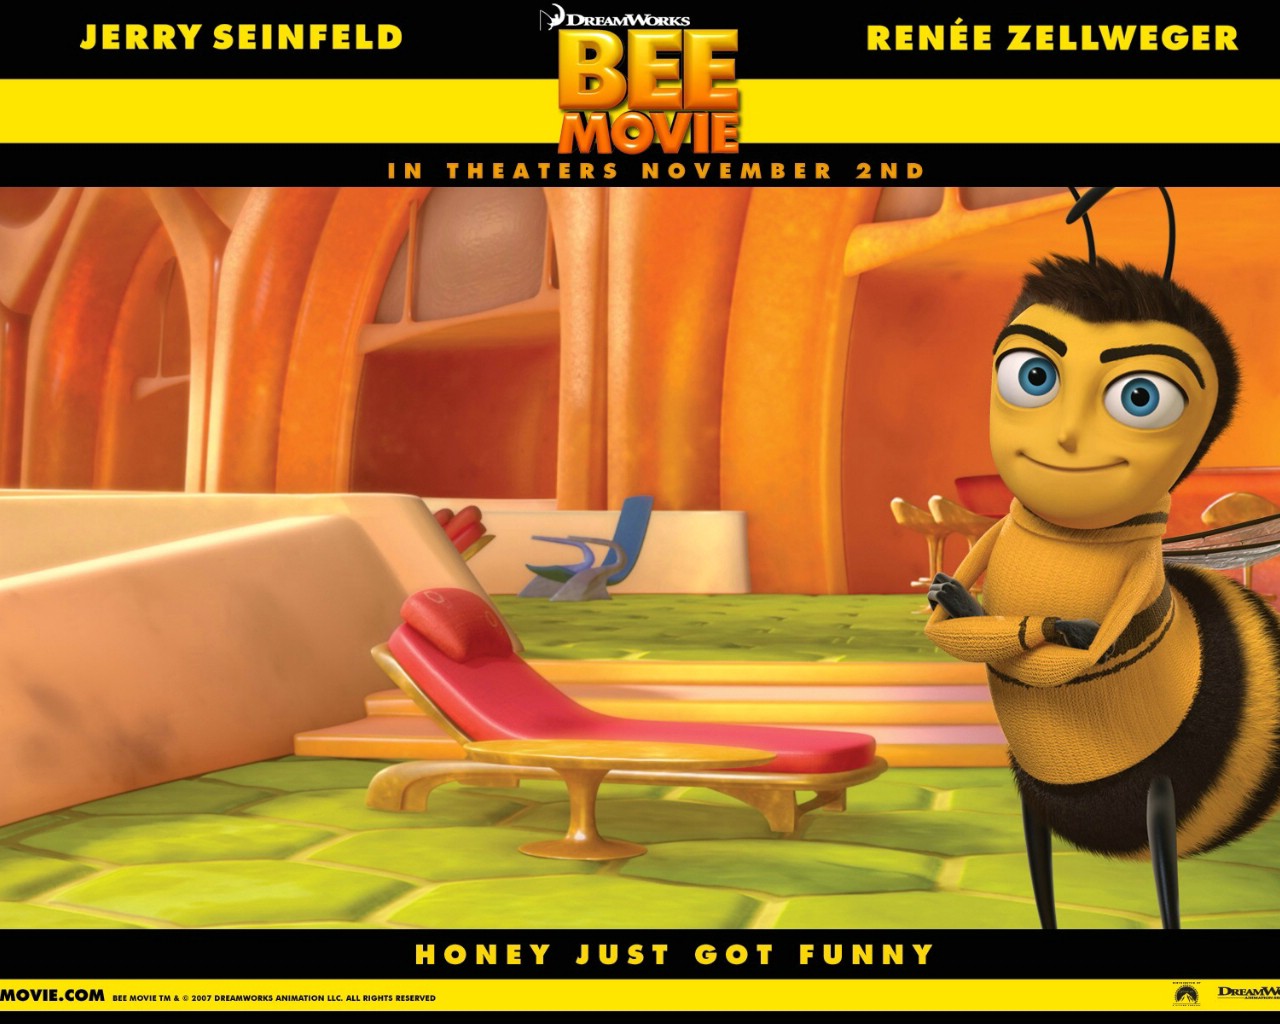 壁纸1280x1024电影壁纸 蜜蜂总动员 一只小蜜蜂 Bee Movie 2007 蜂电影 一只小蜜蜂壁纸 Movie Wallpaper Bee Movie 2007壁纸 《蜜蜂总动员 Bee Movie》壁纸 《蜜蜂总动员 Bee Movie》图片 《蜜蜂总动员 Bee Movie》素材 影视壁纸 影视图库 影视图片素材桌面壁纸